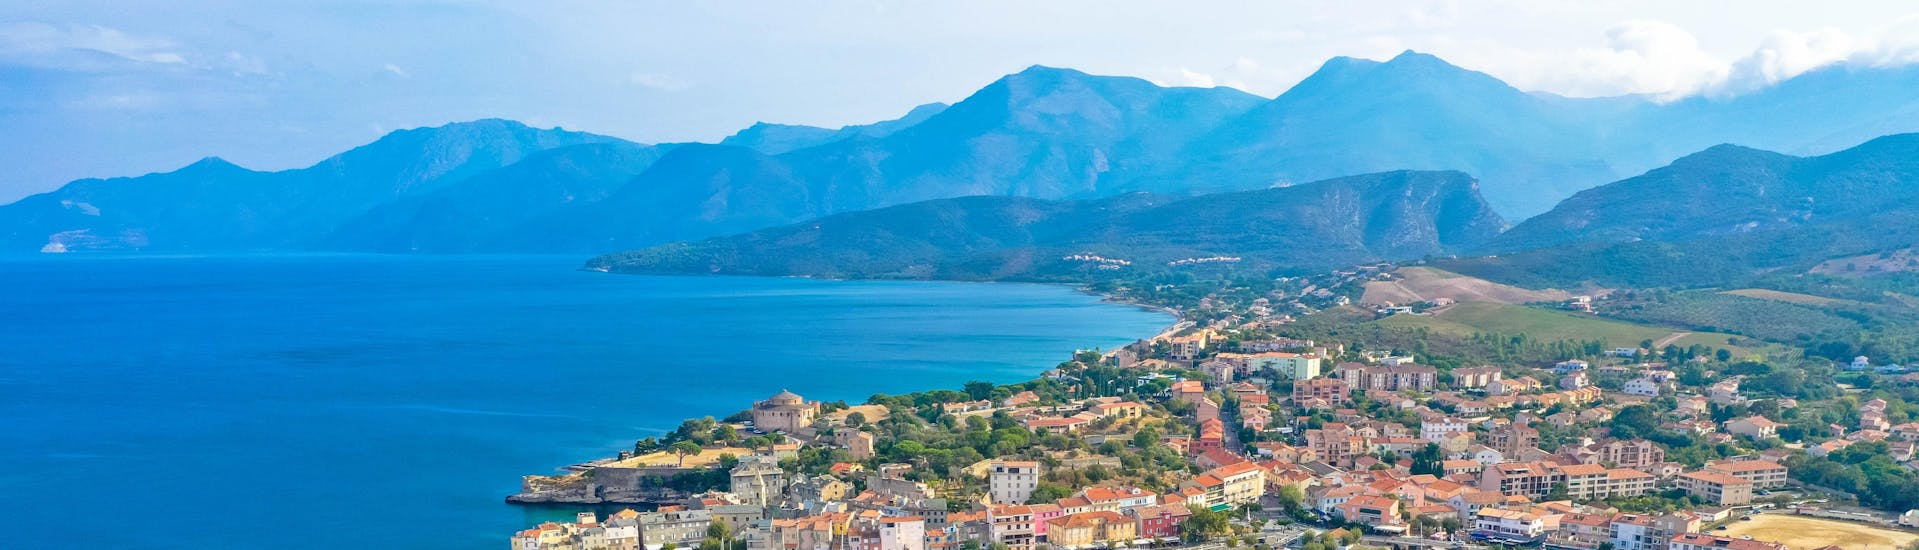 Luftaufnahme des Hafens von Saint-Florent im Norden Korsikas, wo viele Bootstouren zum Cap Corse starten.